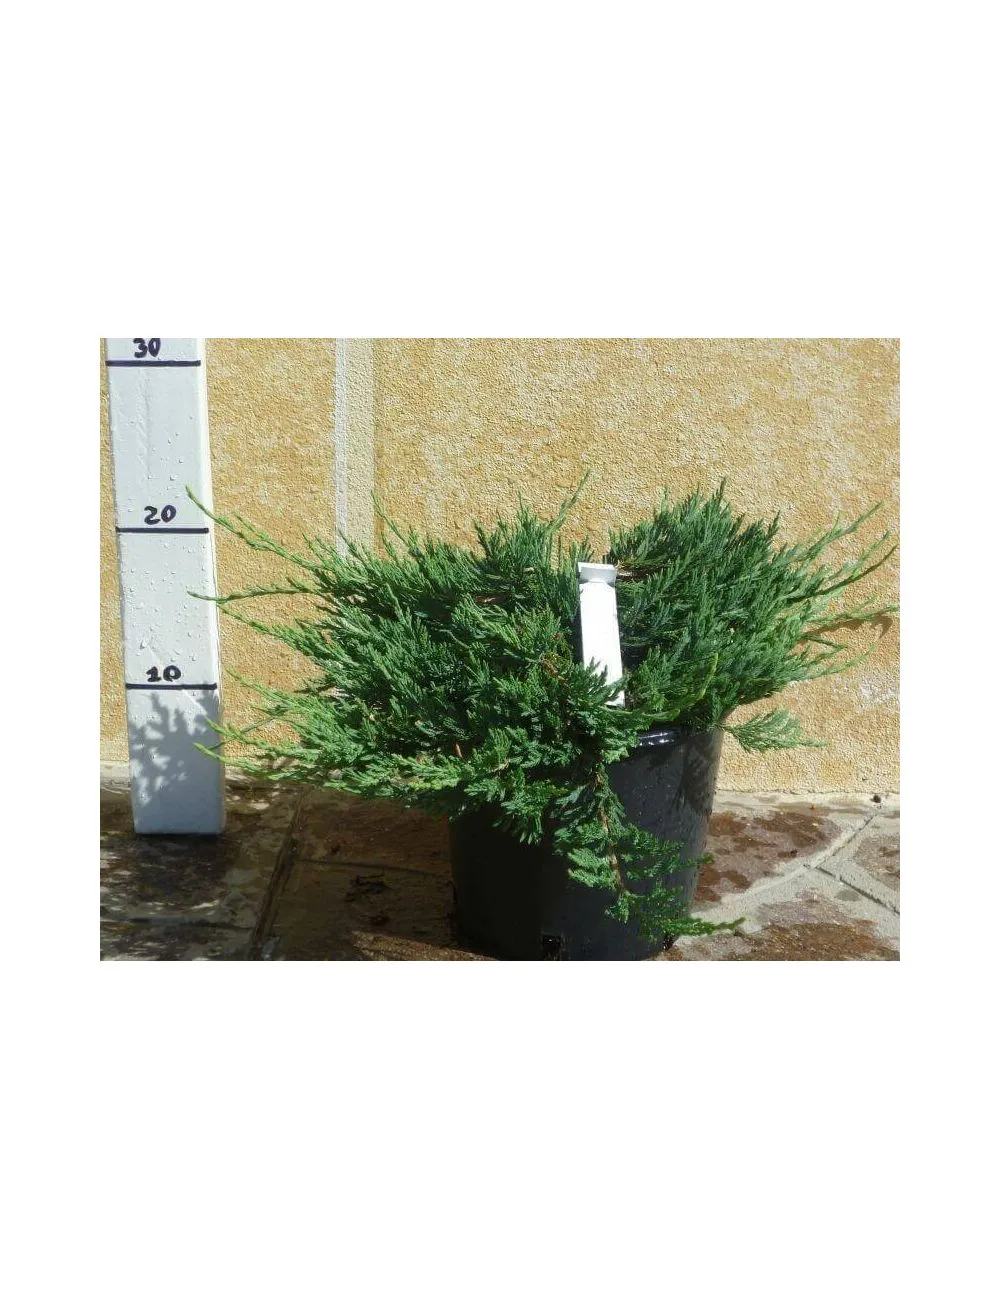 Ginepro "Horizontalis Glauca" (Juniperus Horizontalis Glauca)